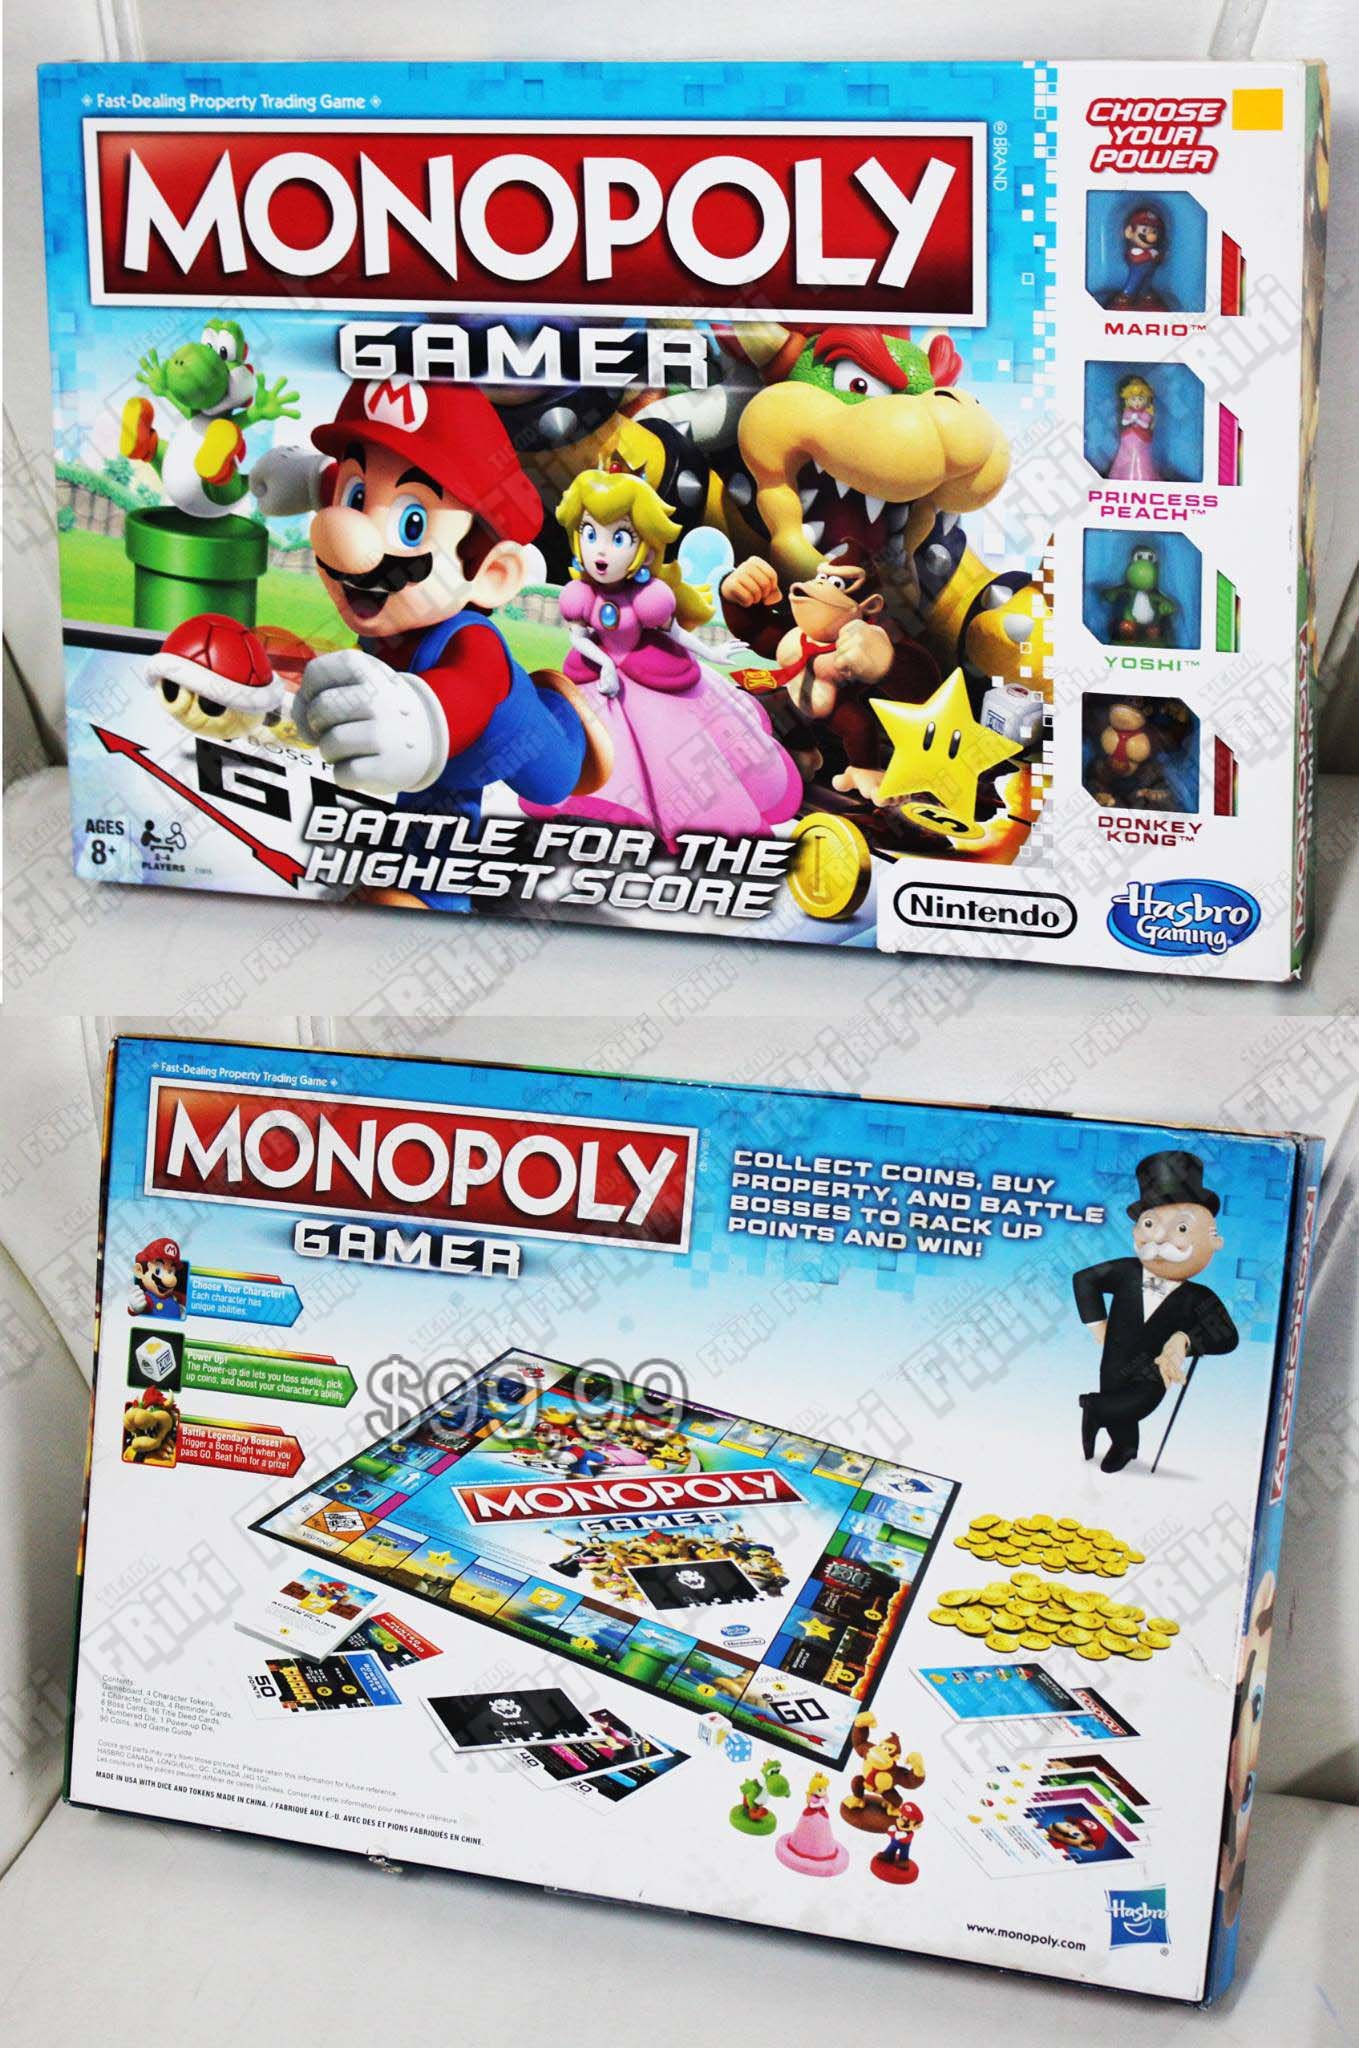 Monopoly Videojuegos Super Mario Bros. Gamer Ecuador Comprar Venden, Bonita Apariencia ideal para los fans, practica, Hermoso material de polipropileno Color como en la imagen Estado nuevo